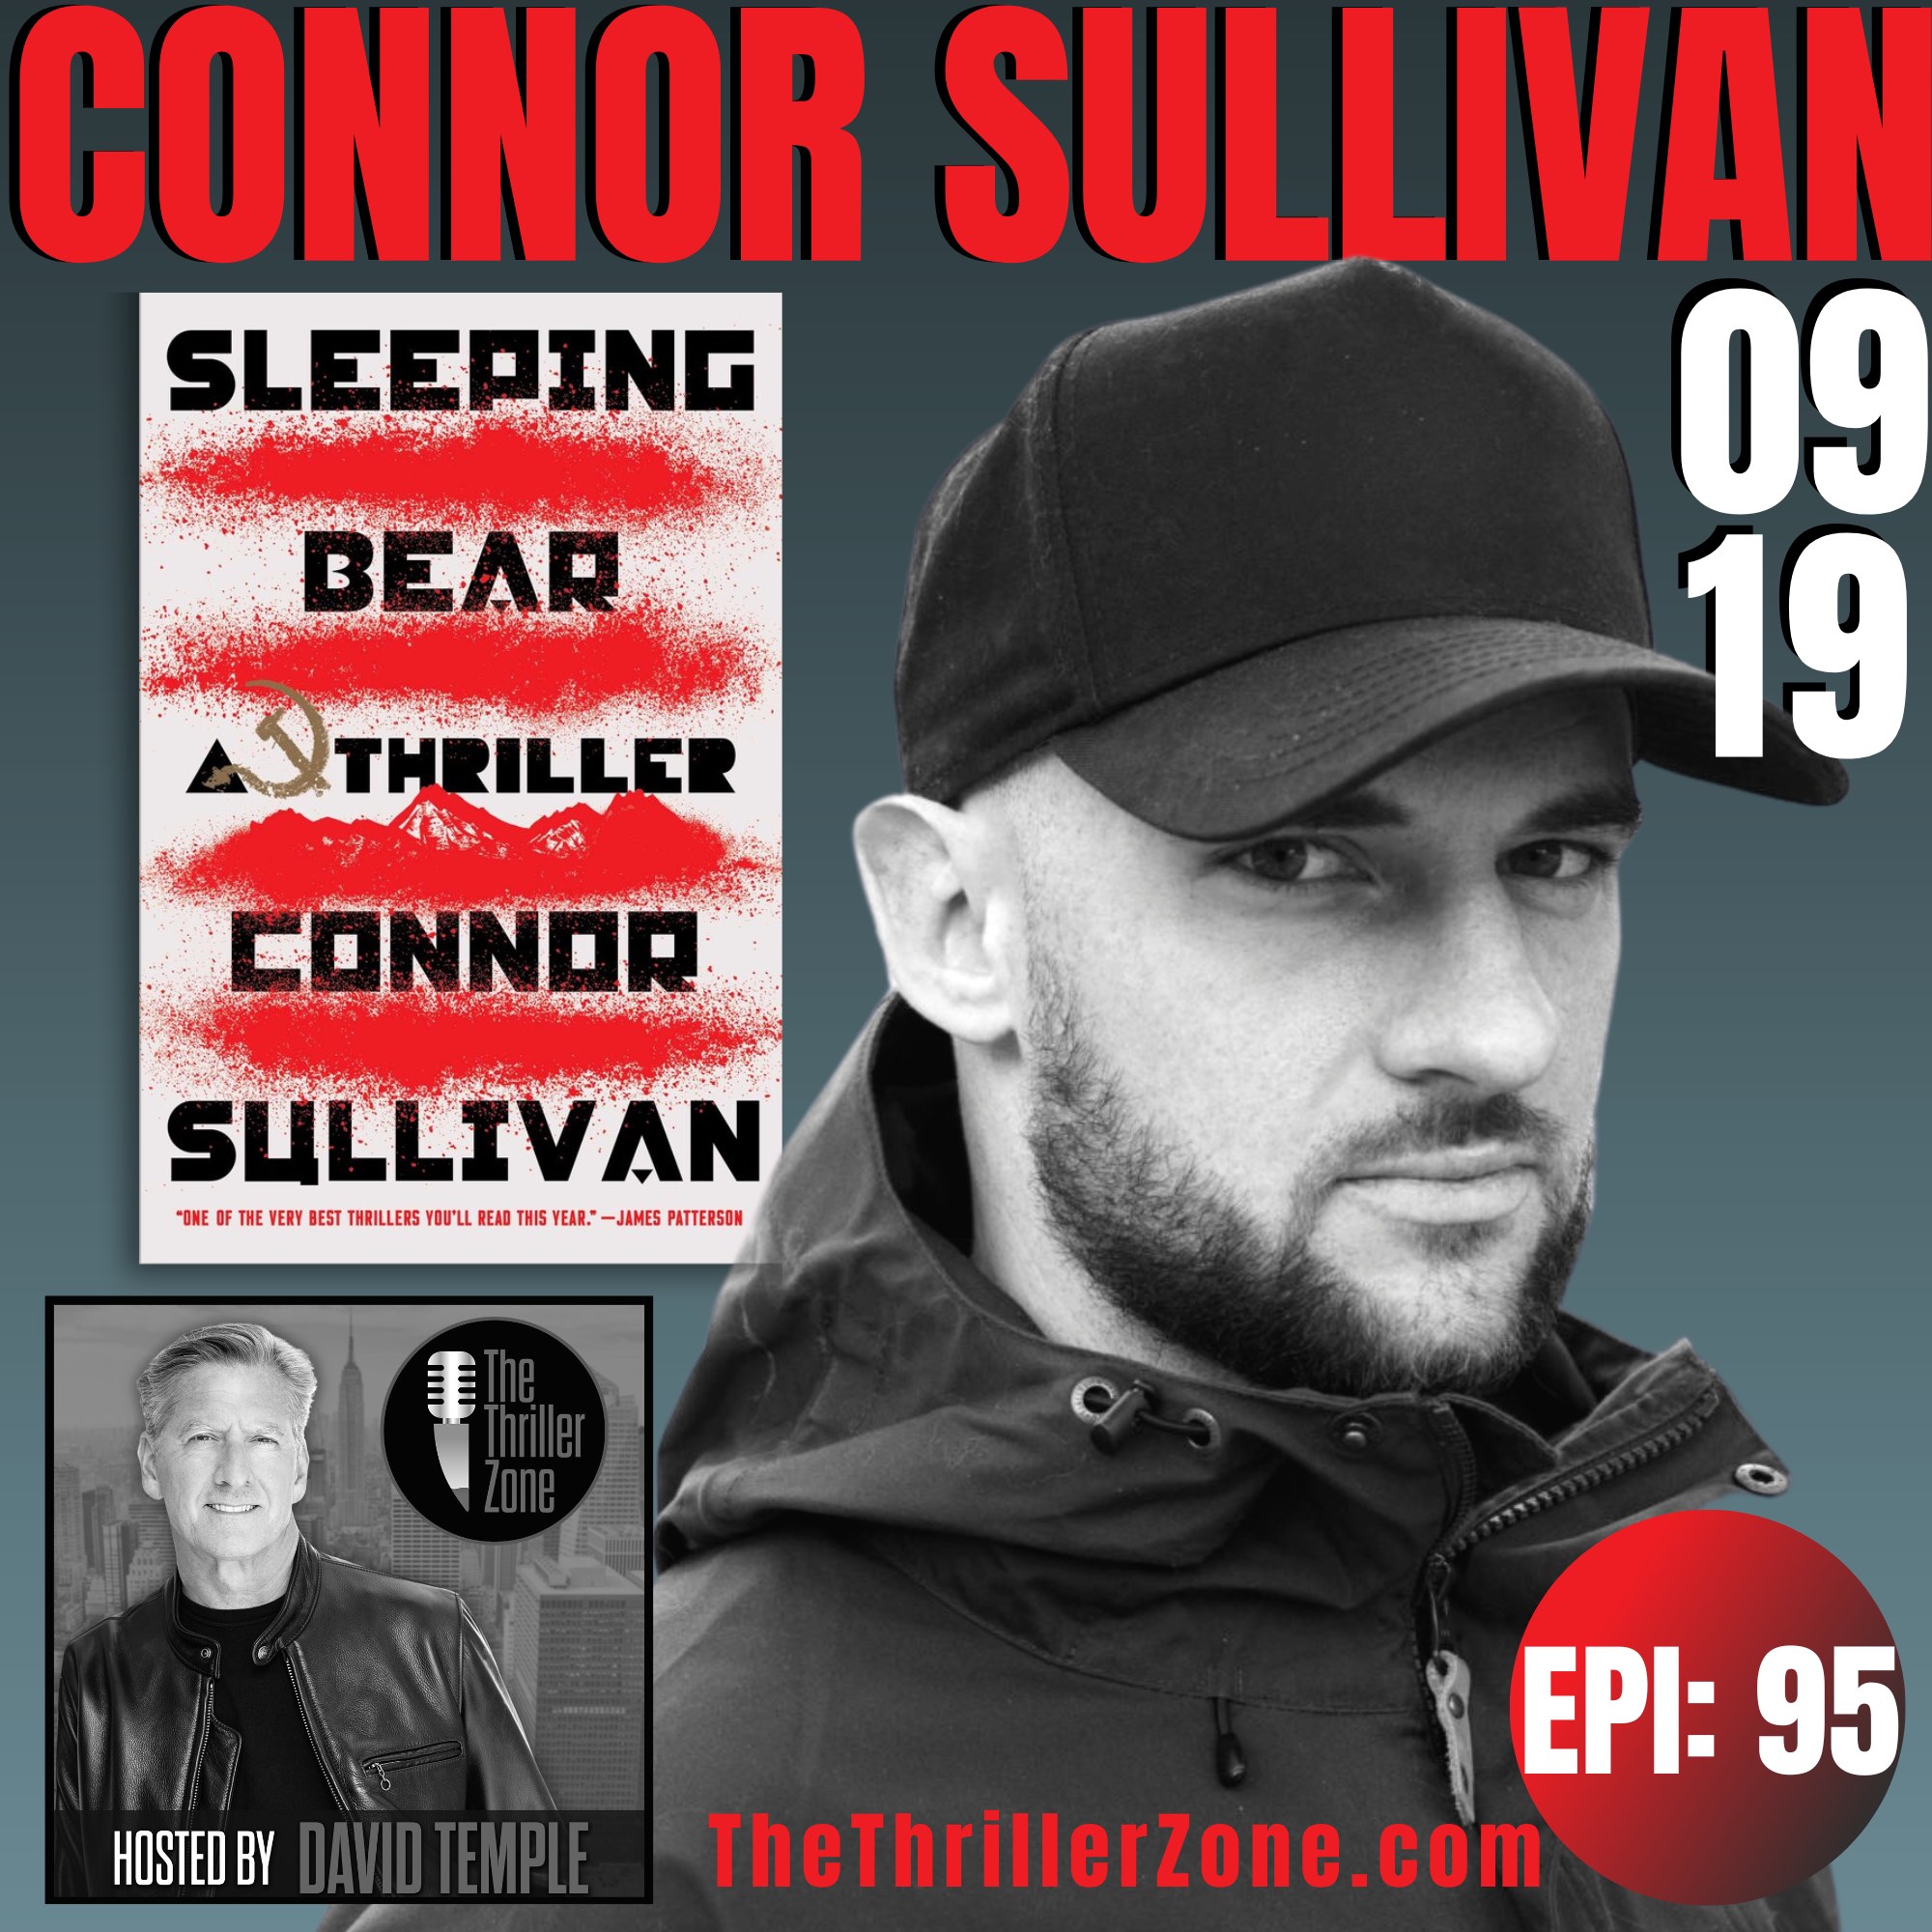 Connor Sullivan, author of Sleeping Bear